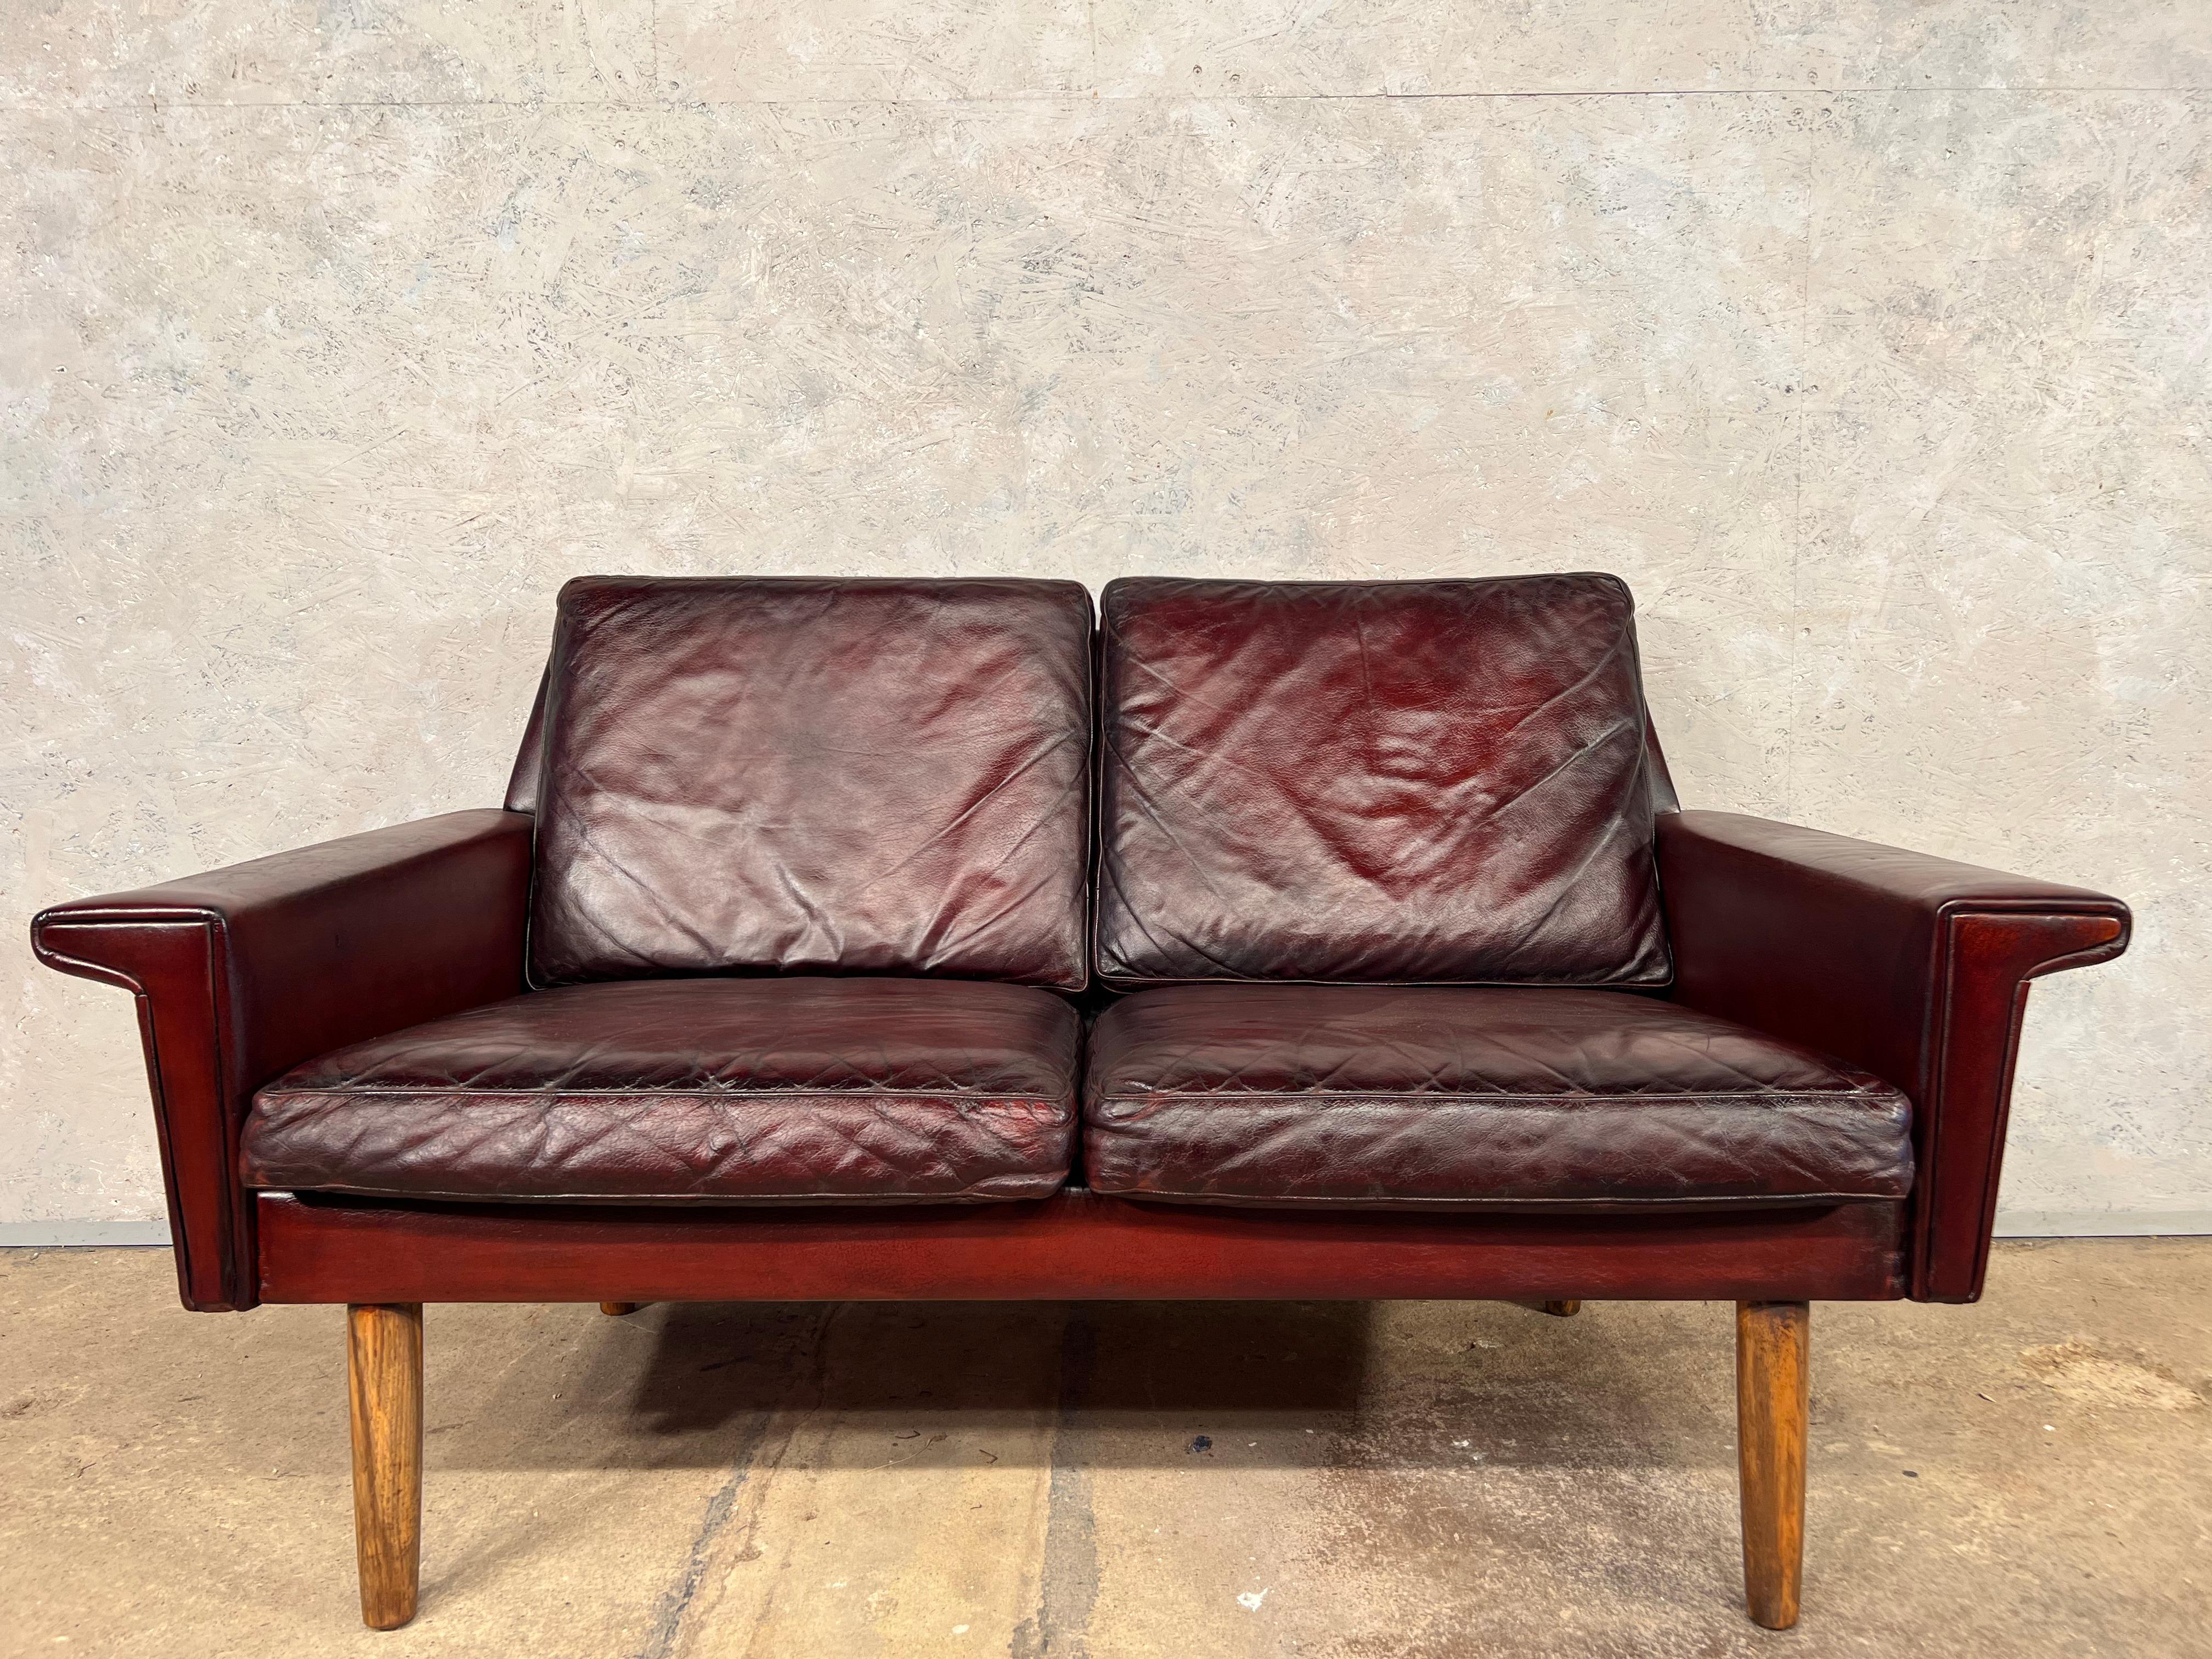 Un élégant canapé du début des années 1970 par Svend Skipper Danemark. Un grand design avec de belles lignes, il s'assoit merveilleusement. Des proportions petites et soignées avec une assise profonde, très confortable.

Une couleur cerise profonde